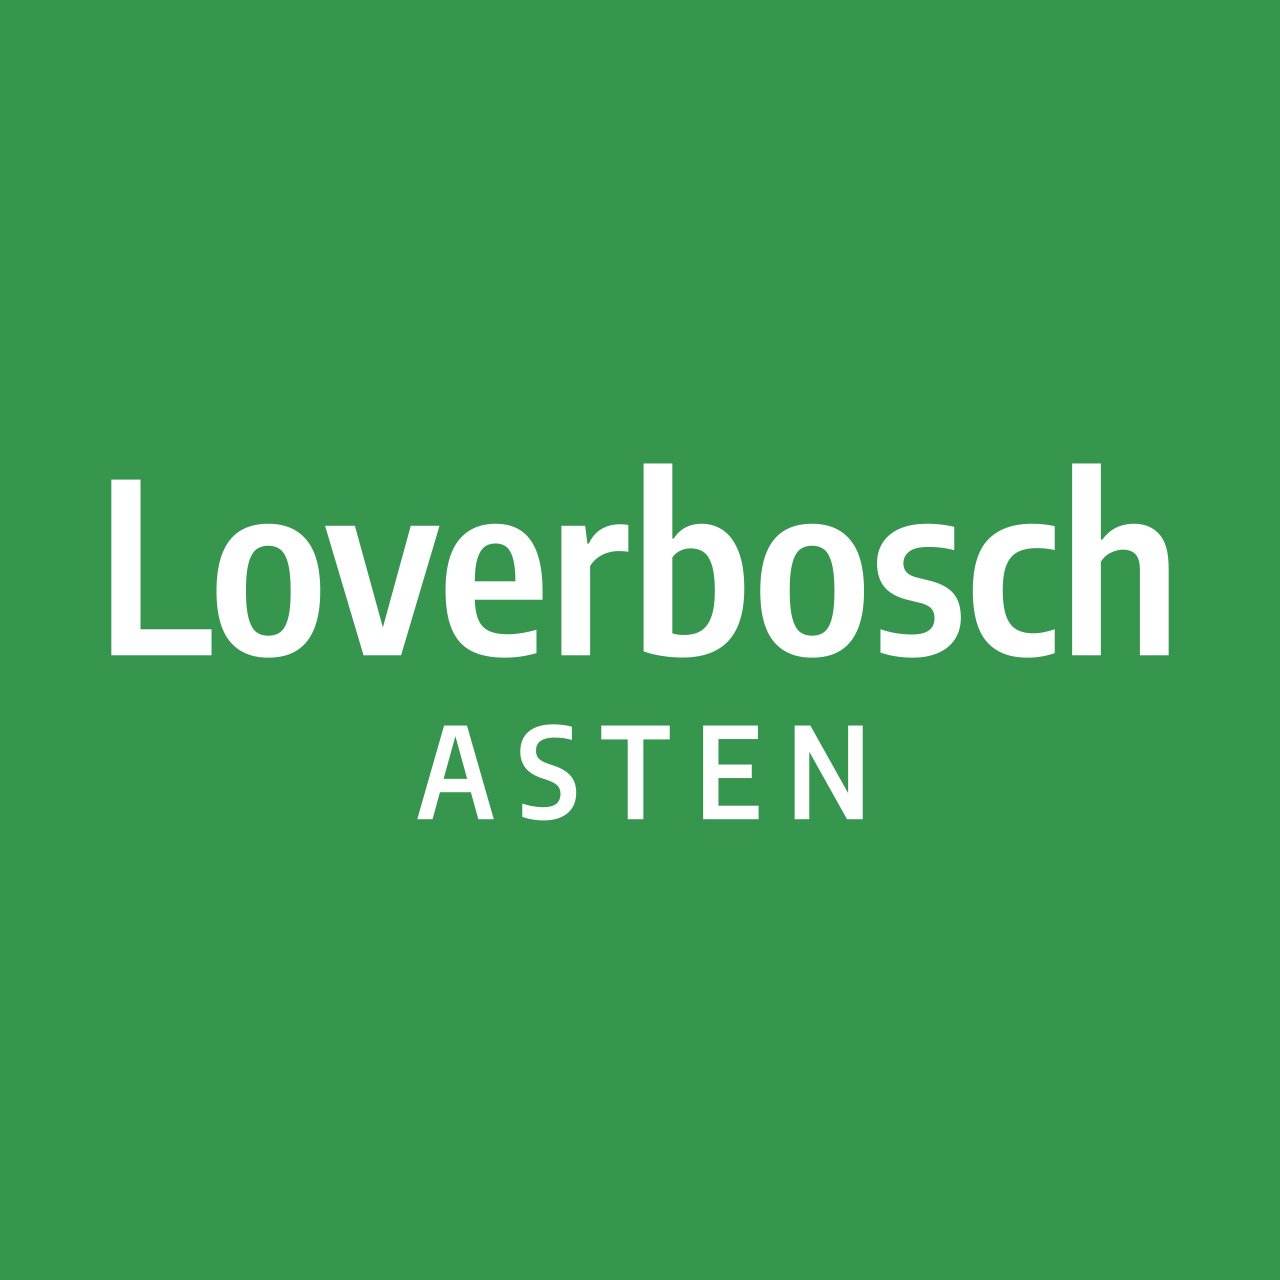 Loverbosch Asten 